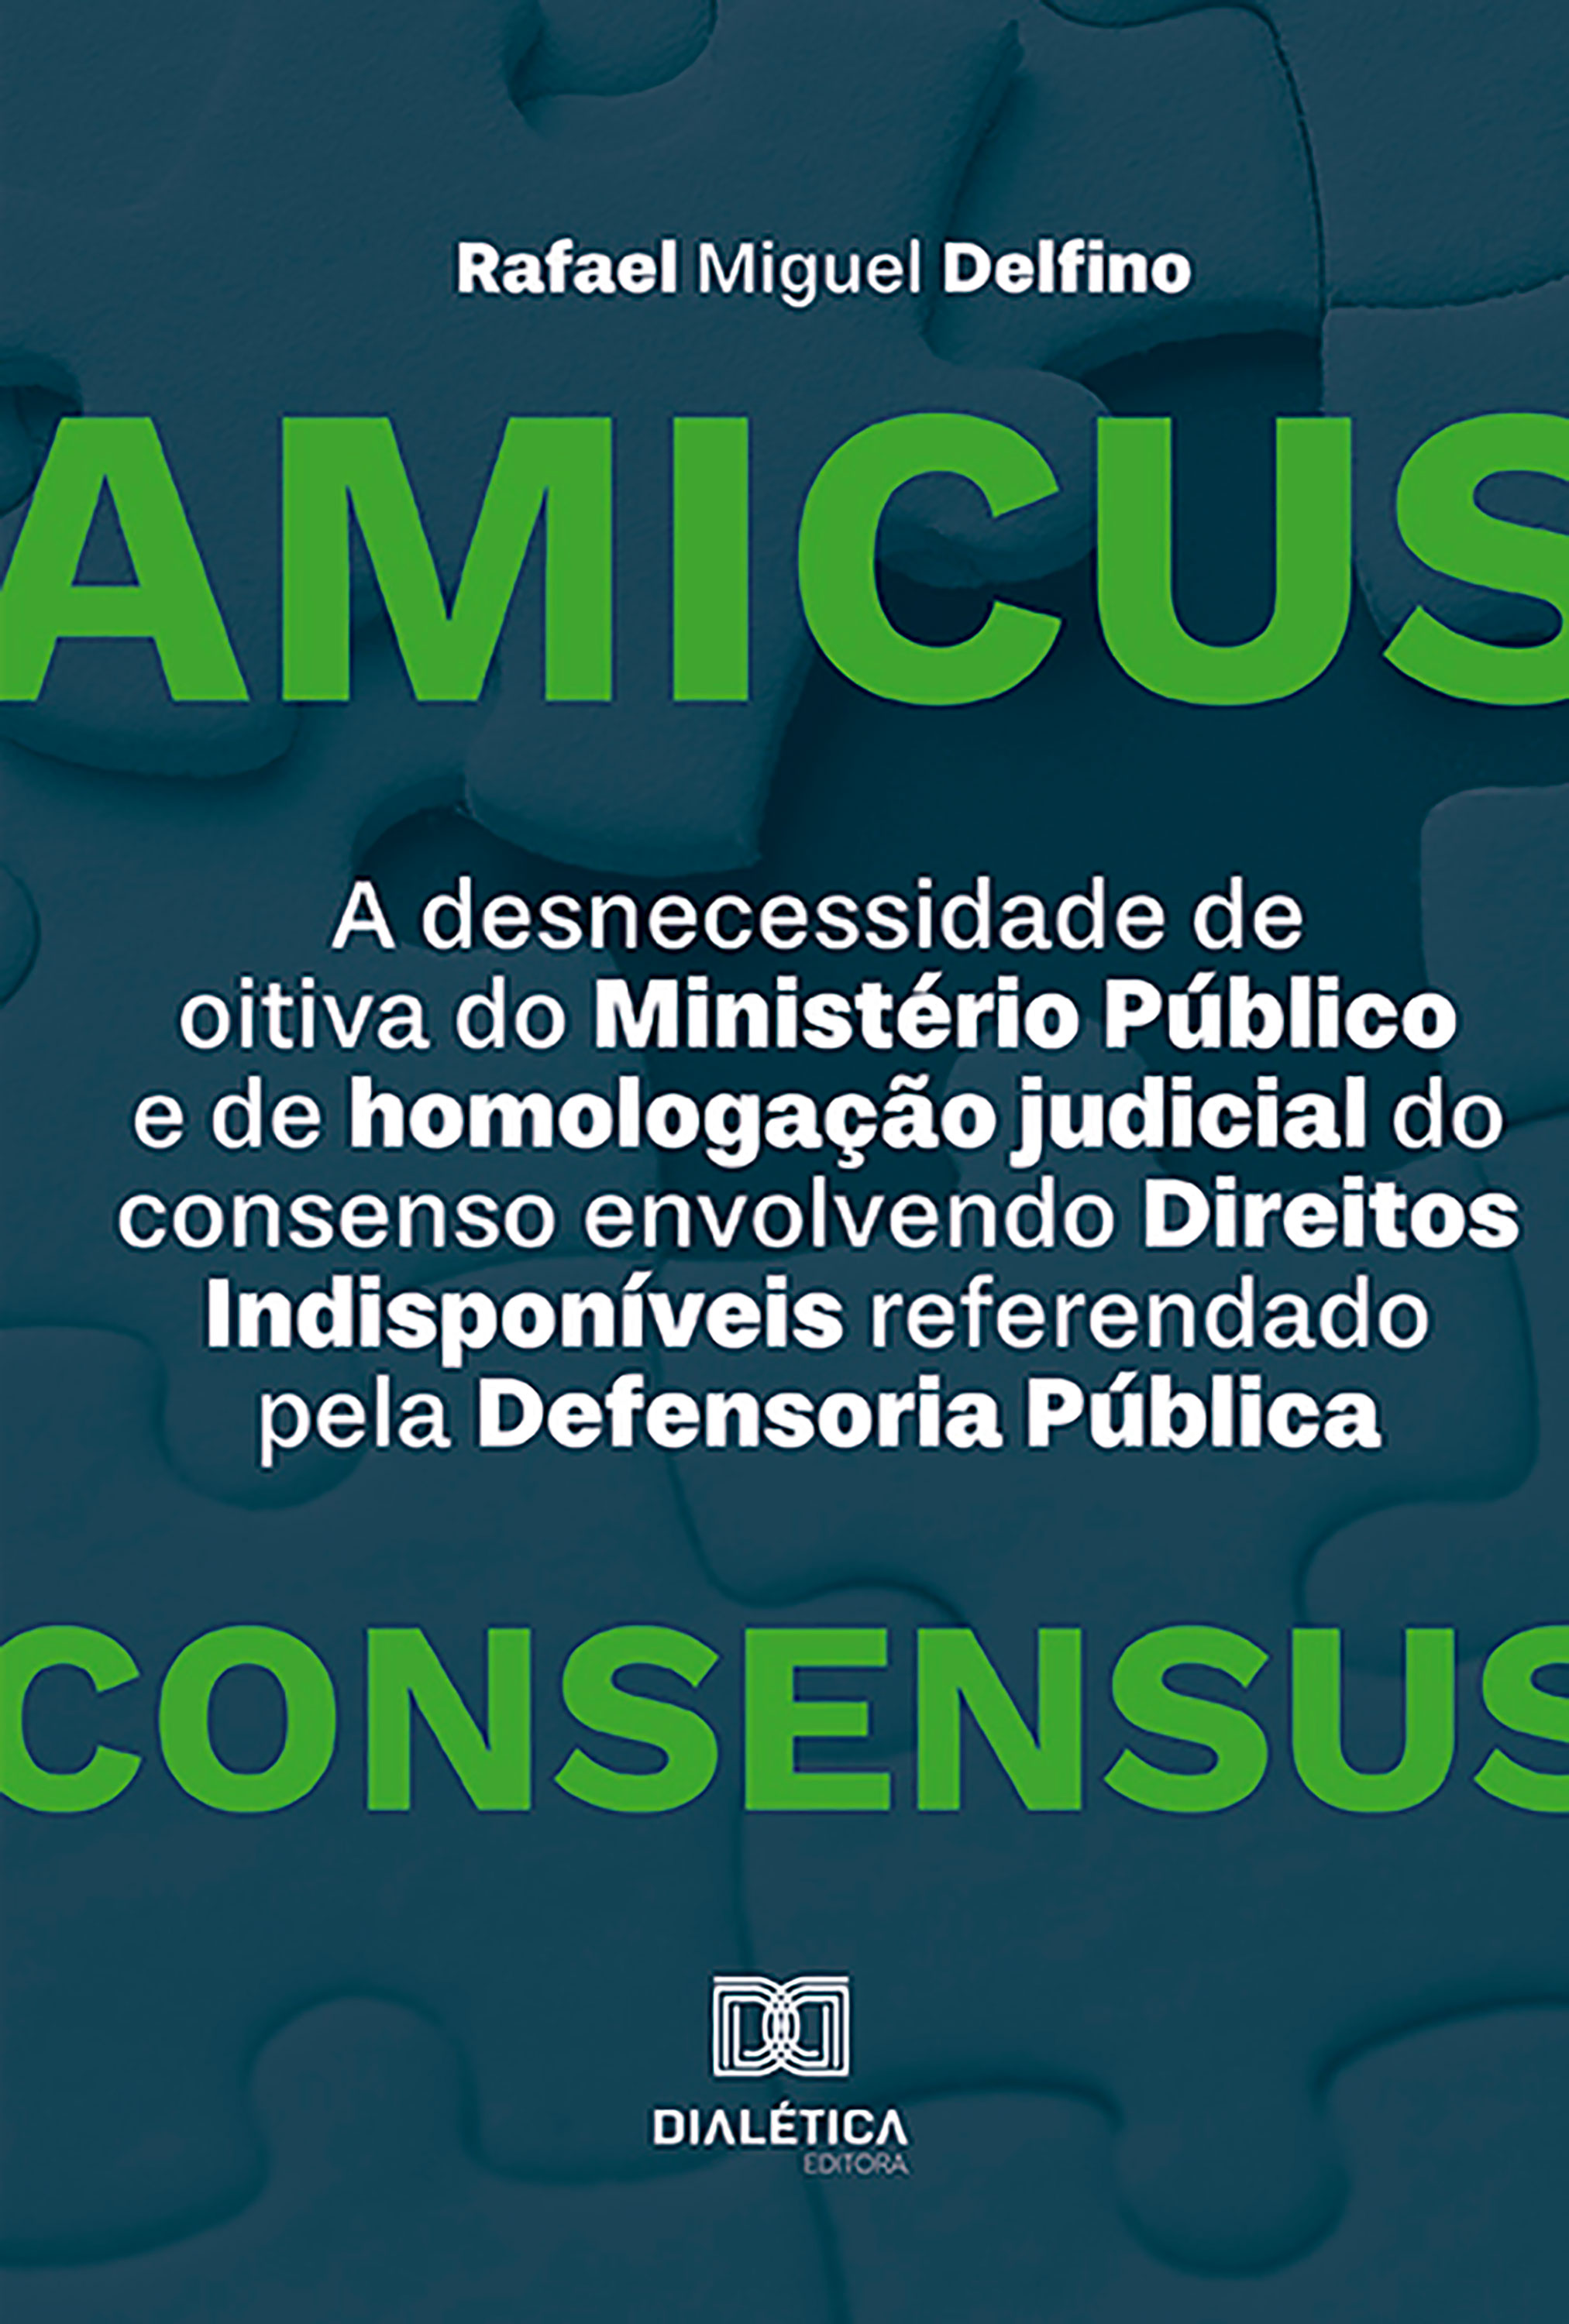 A desnecessidade de oitiva do Ministério Público e de homologação judicial do consenso envolvendo Direitos Indisponíveis referendado pela Defensoria Pública